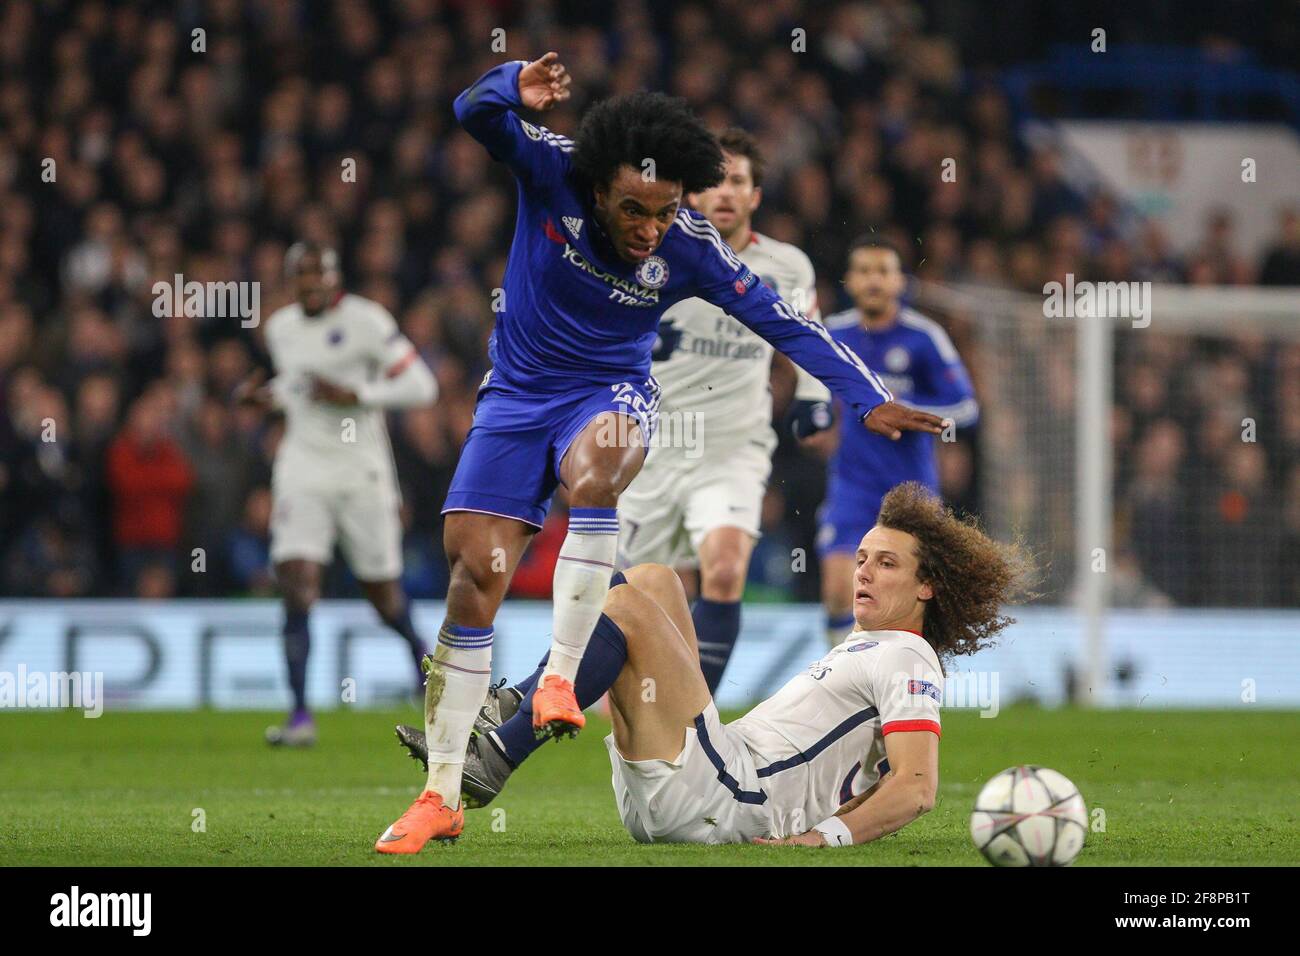 Willian von Chelsea (blau) fordert David Luiz von Paris Saint-Germain während des UEFA Champions League-Spiels 16 zwischen Chelsea und Paris Saint-Germain auf der Stamford Bridge in London heraus. 9. März 2016. Stockfoto